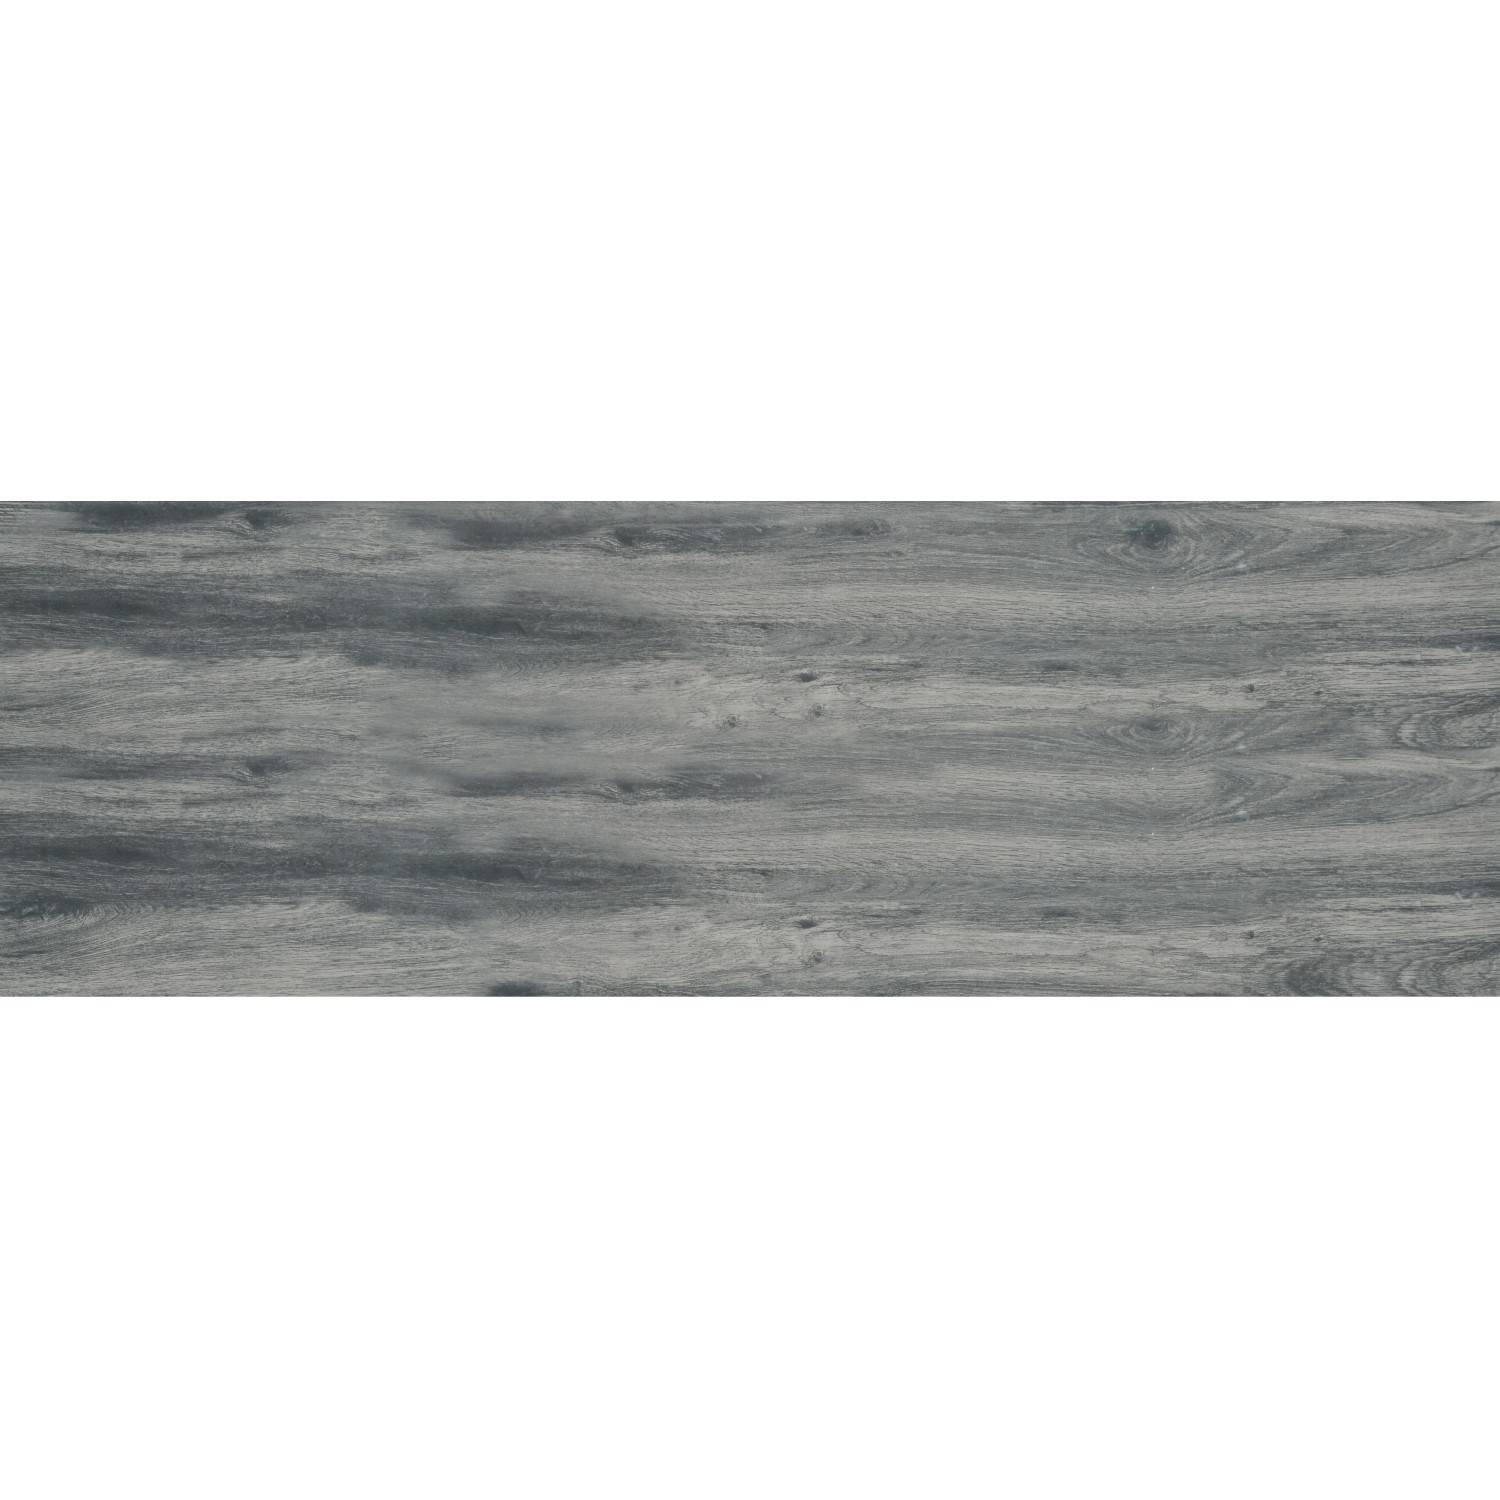 Terrassenplatte Feinsteinzeug Skagen Trend 40 x 120 x 2 cm grau